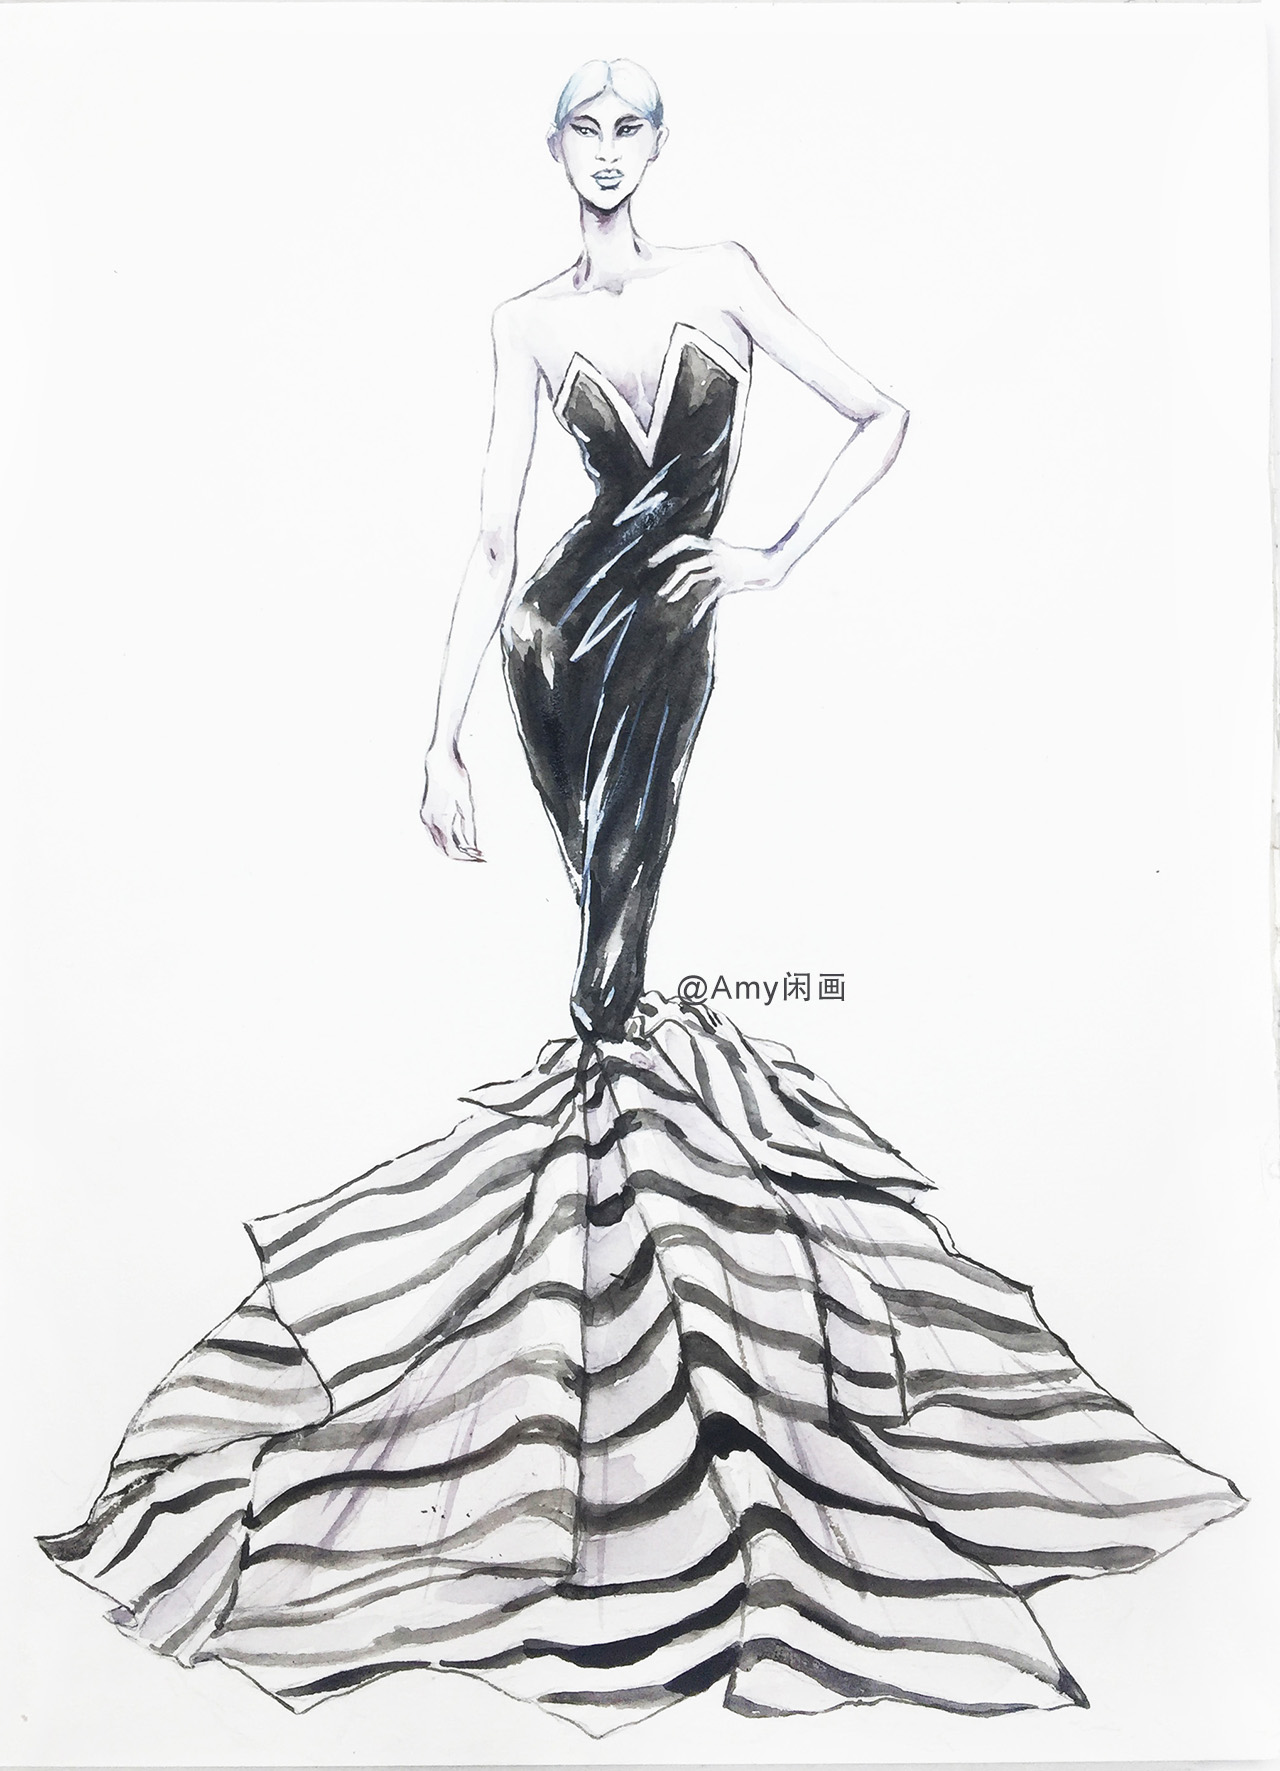 服装设计技法水彩画,黑白条纹鱼尾裙绘画过